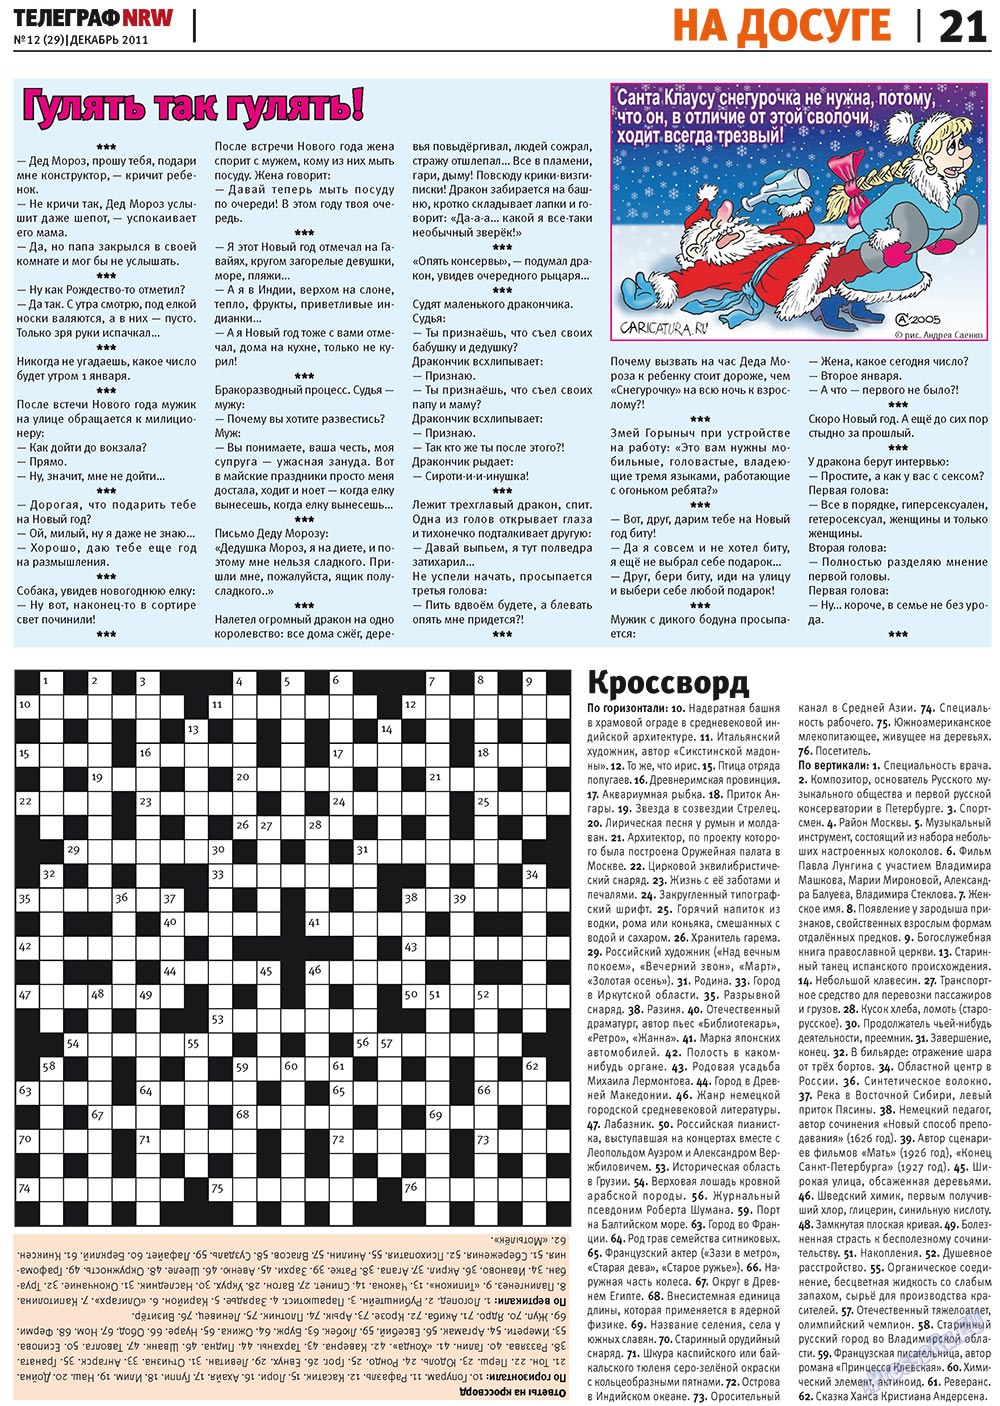 Телеграф NRW (газета). 2011 год, номер 12, стр. 21